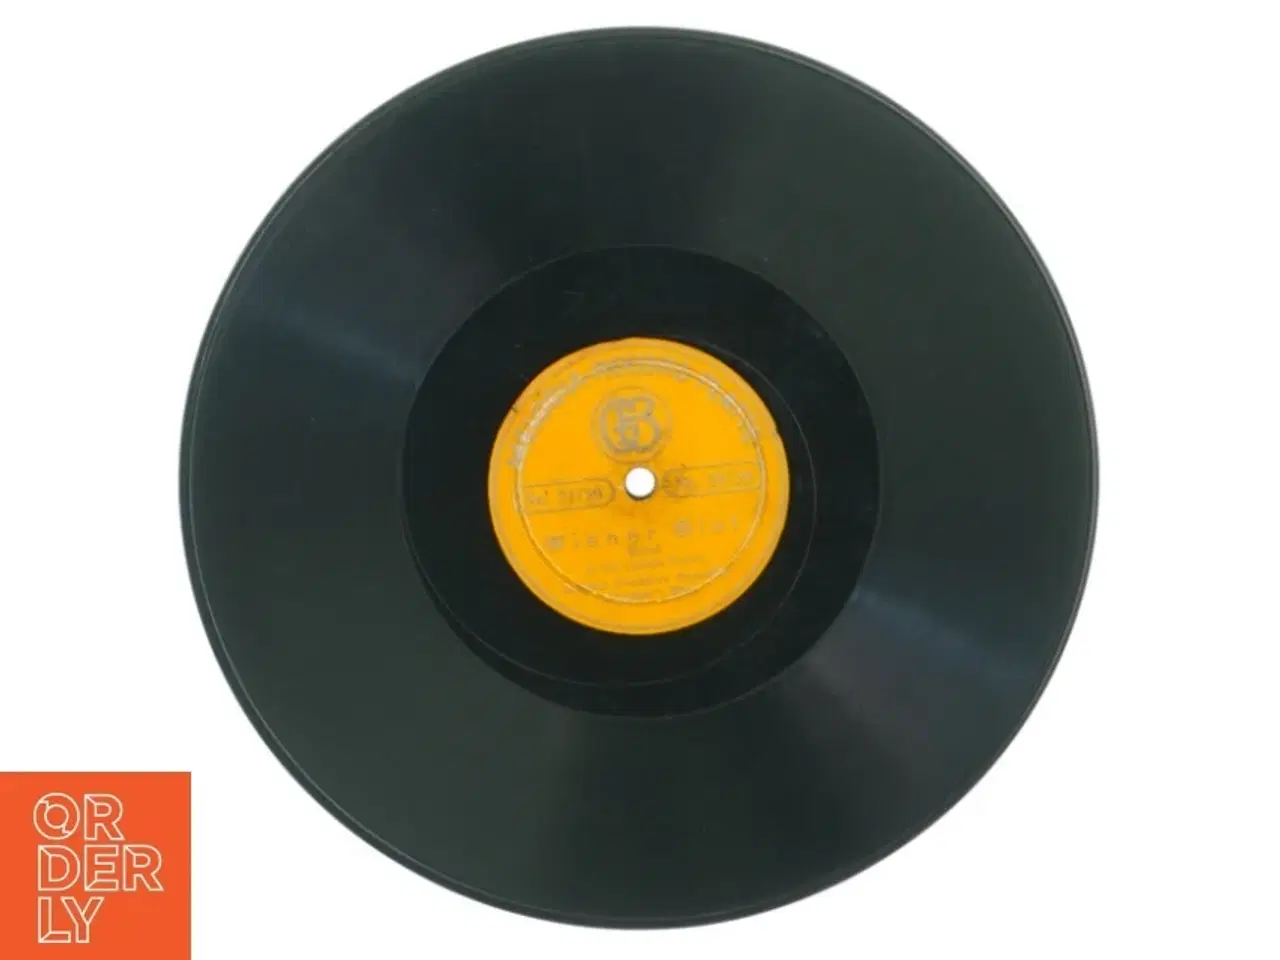 Billede 1 - Wiener blut lp fra Melodia Record Platte (str. 25 cm)